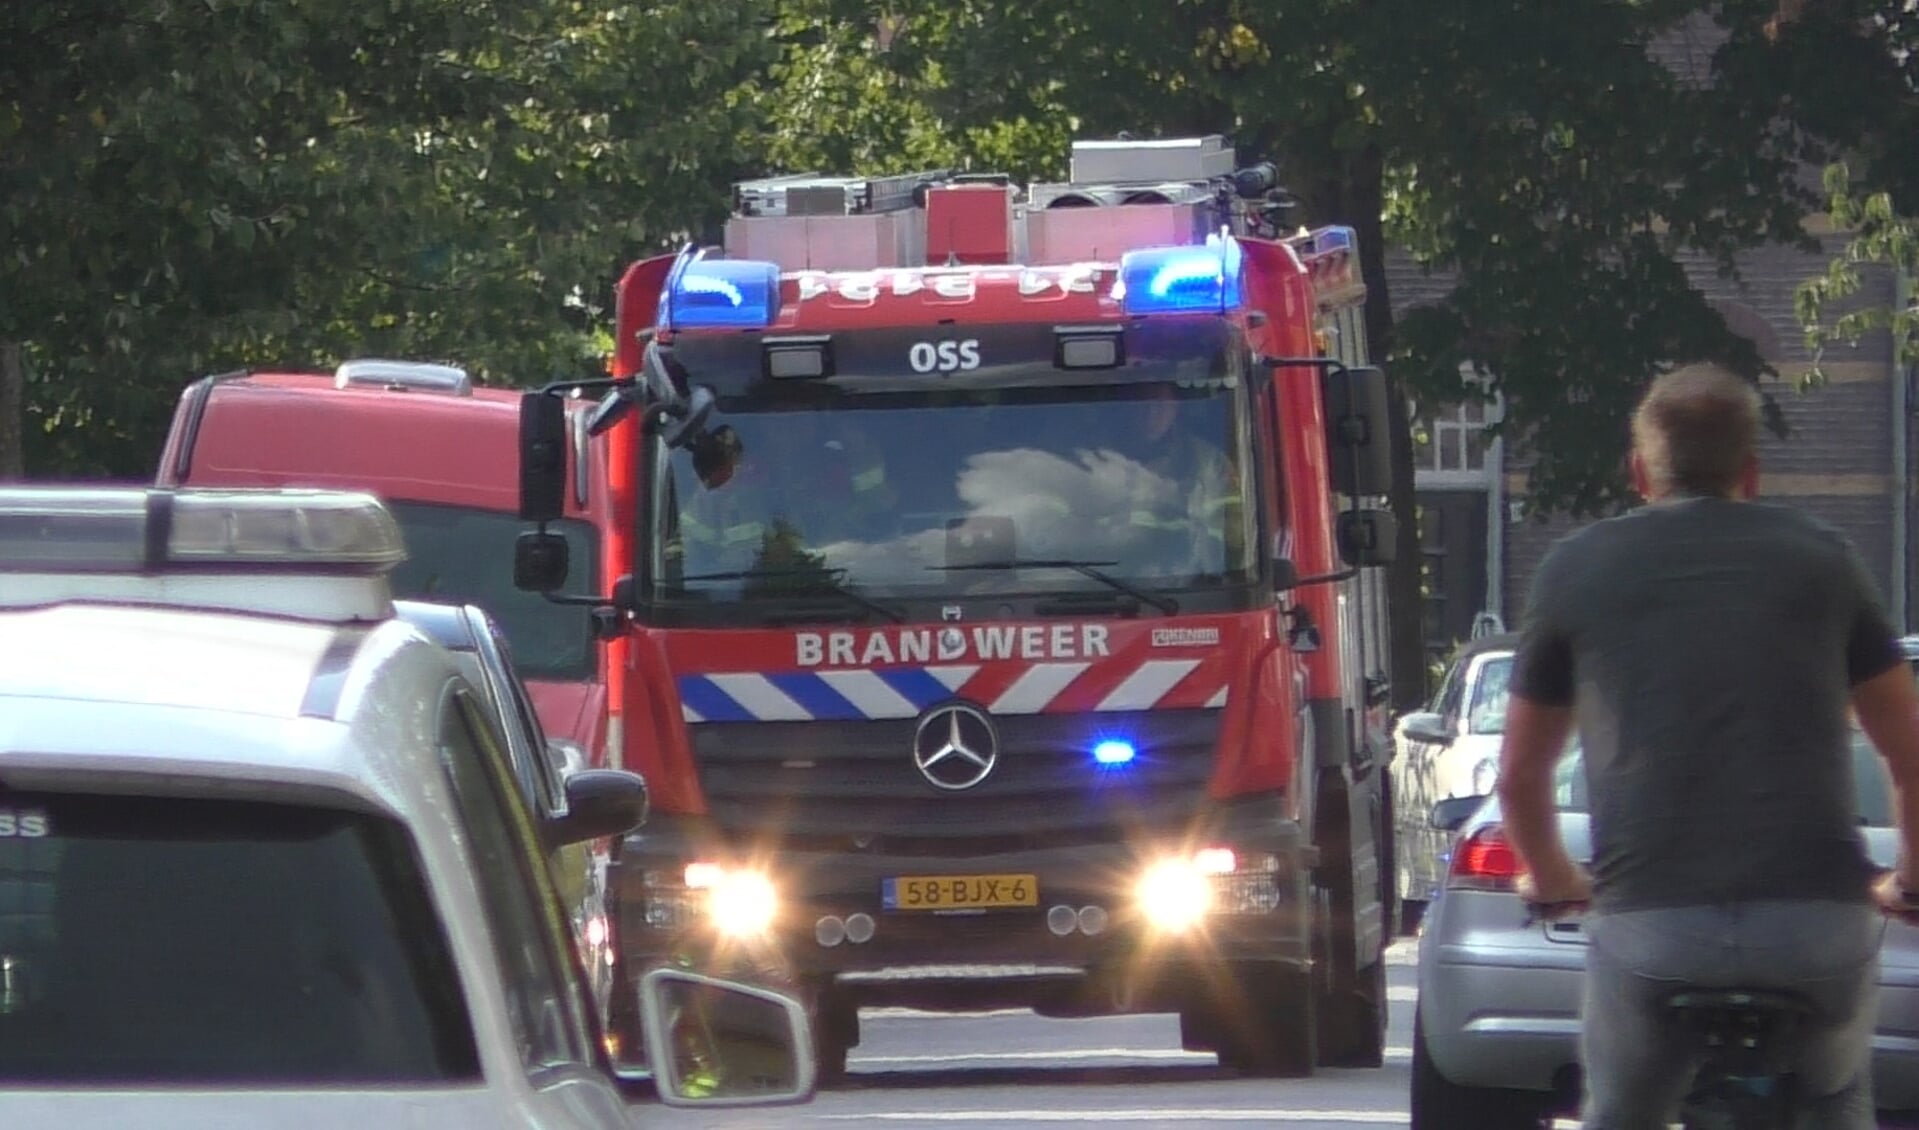 Brandweer naar scooterbrand, maar voertuig wordt niet aangetroffen. (Foto: Thomas)